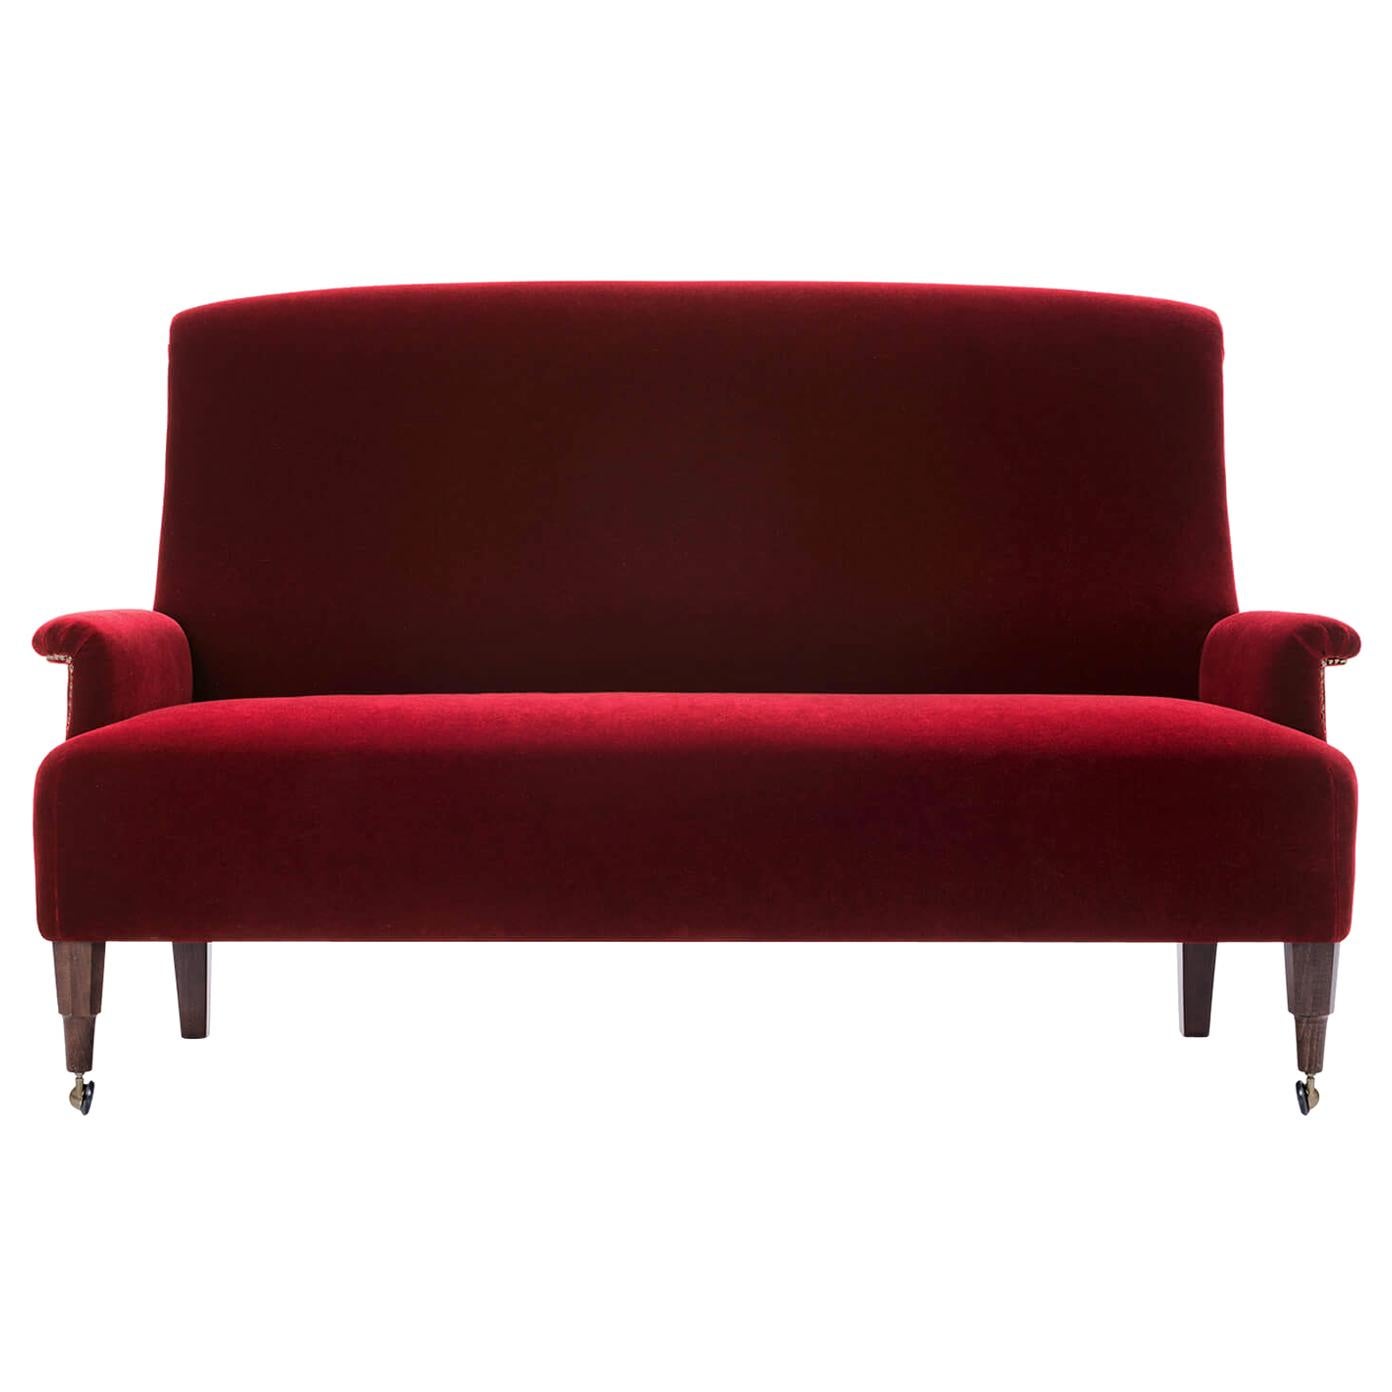 Azucena ABCD Two-Seat Sofa by Luigi Caccia Dominioni For Sale